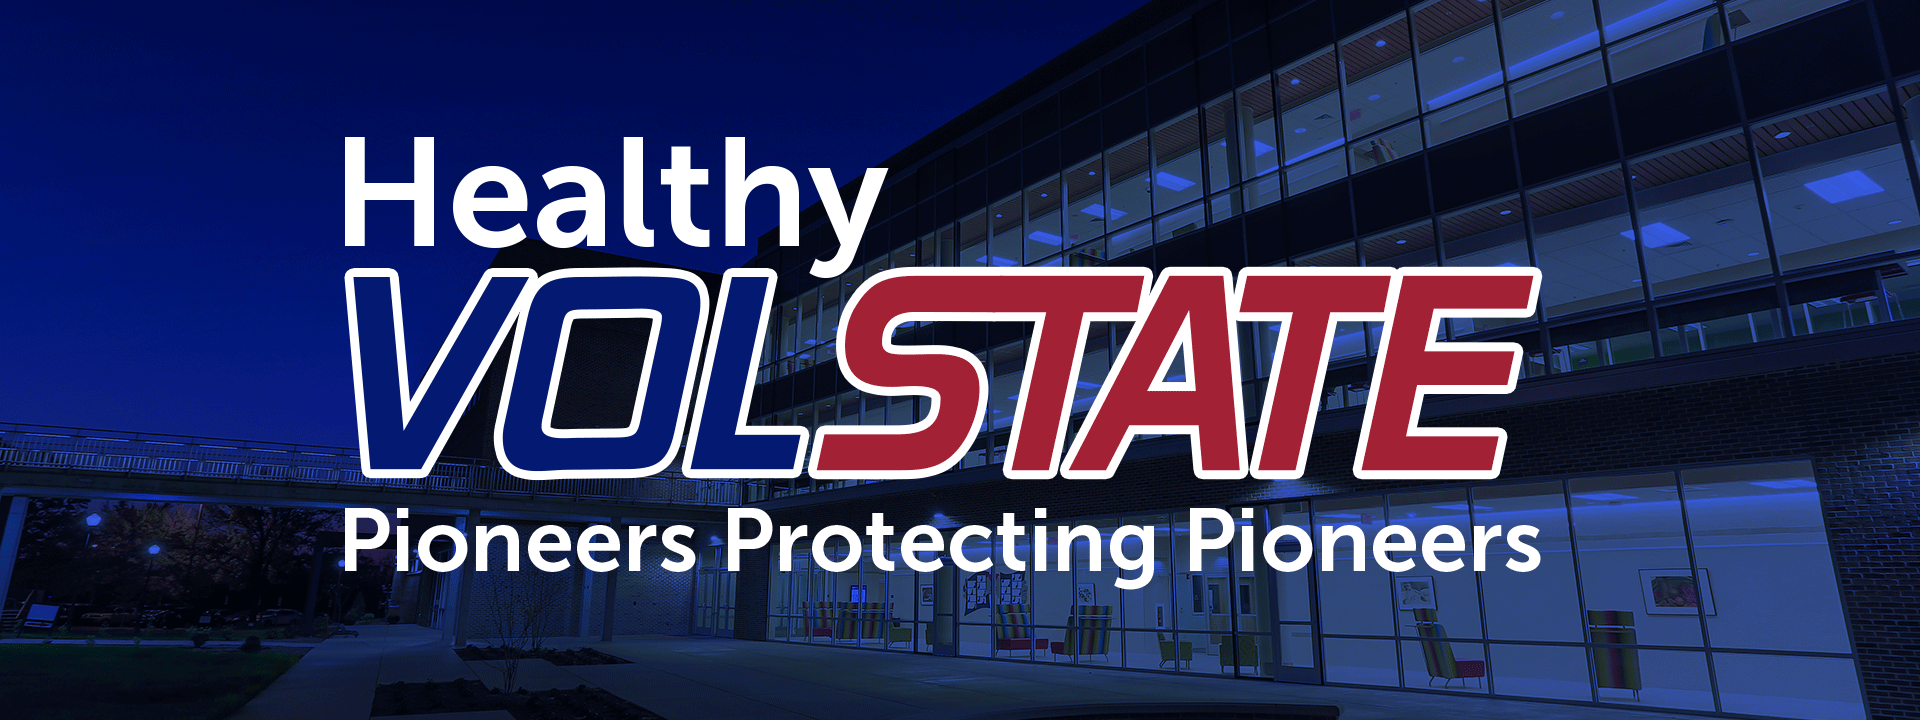 Health Vol State - Pioneers Protecting Pioneers